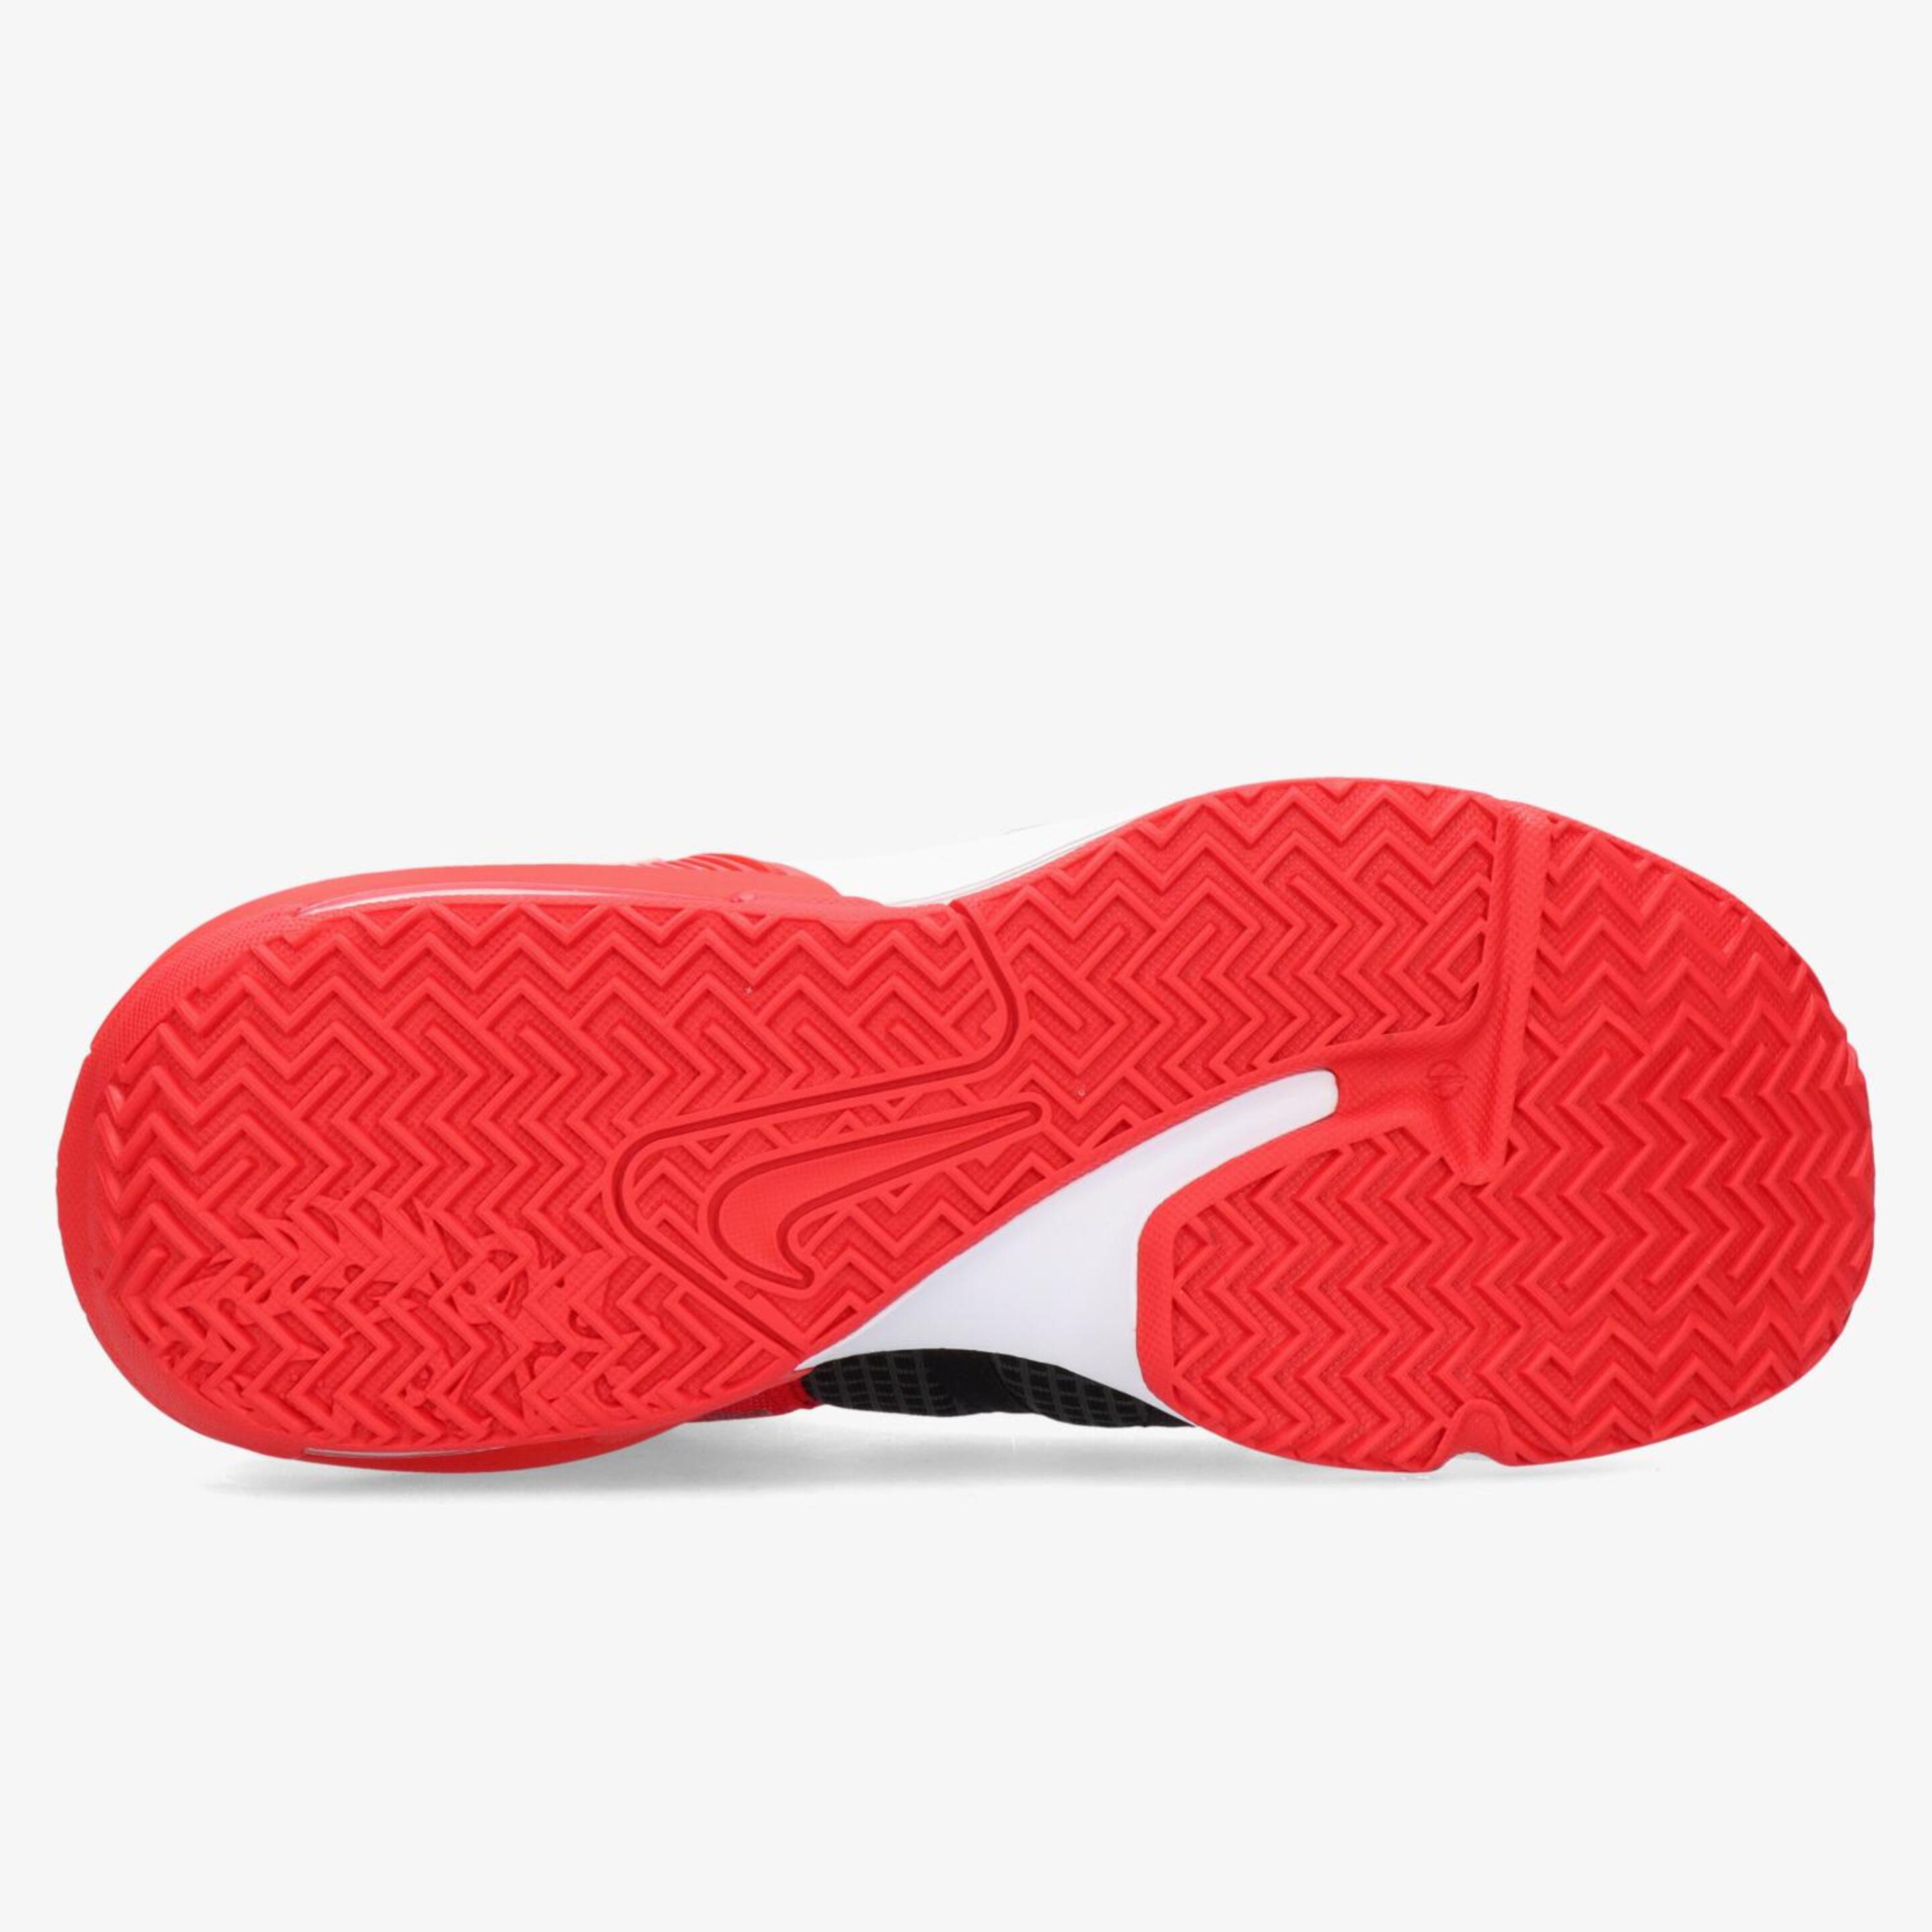 Nike Lebron